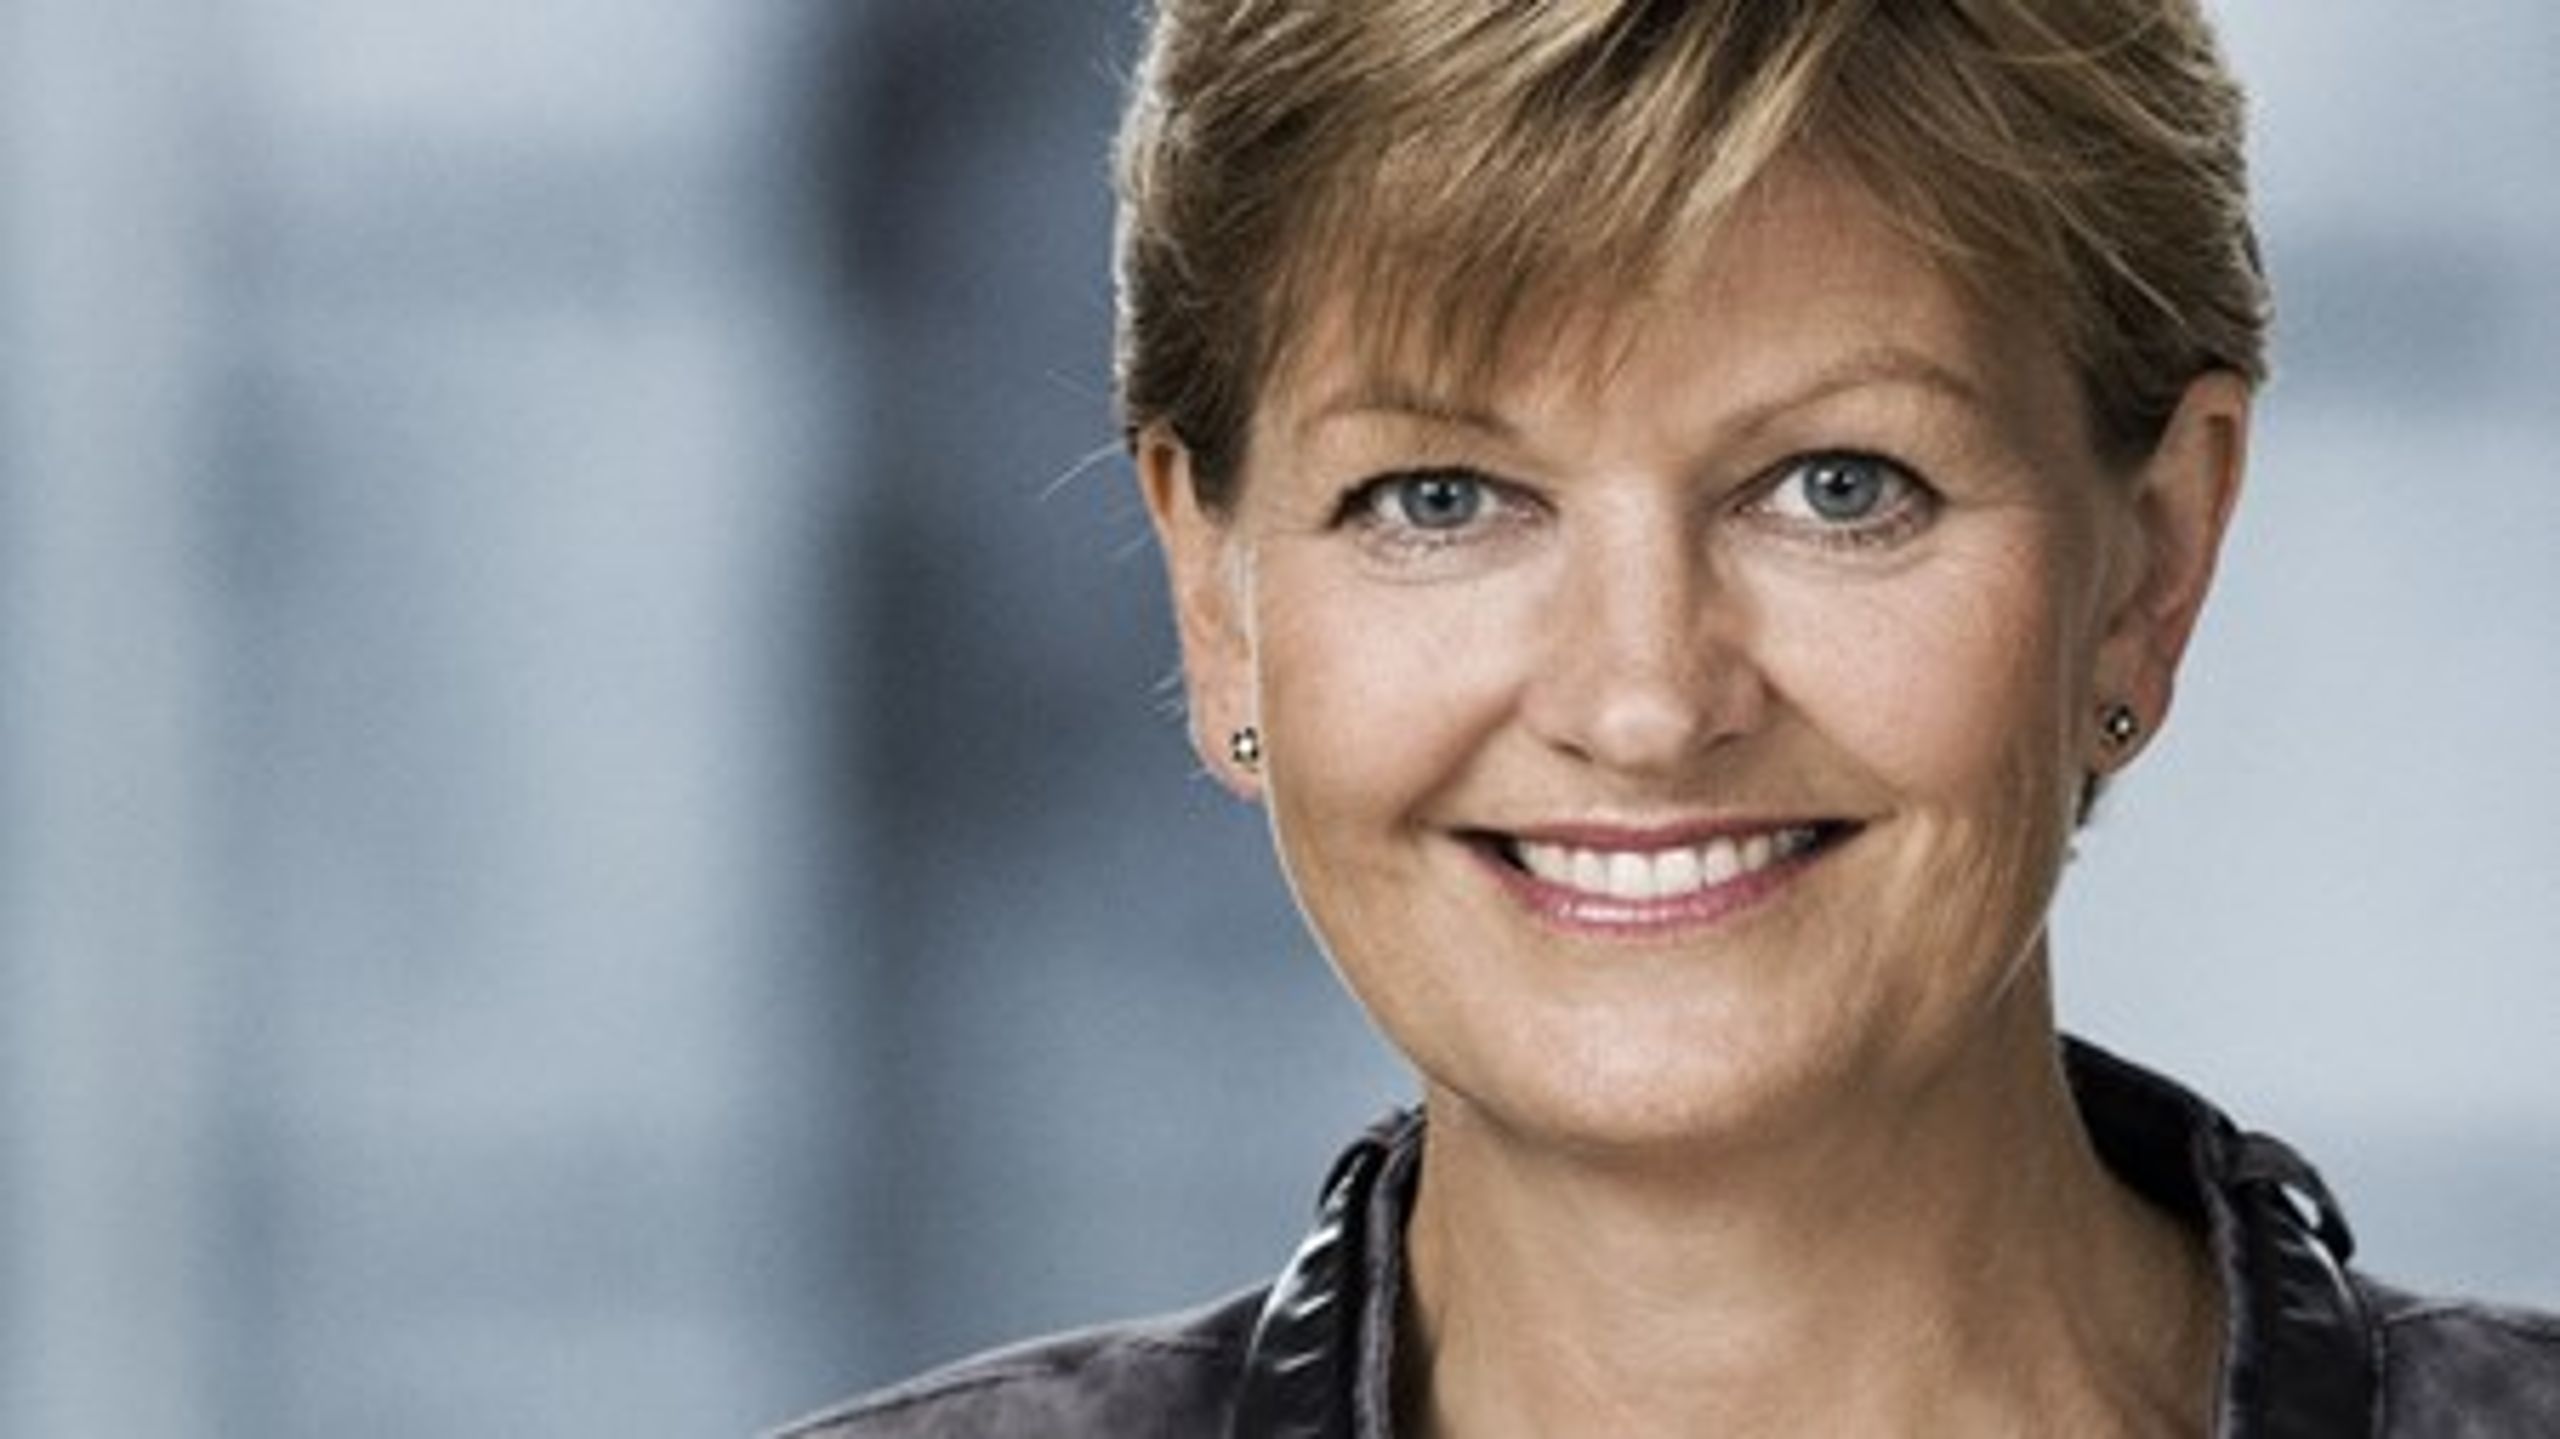 Miljø- og fødevareminister Eva Kjer Hansen (V) ser store muligheder for danske virksomheder i Sydafrika.